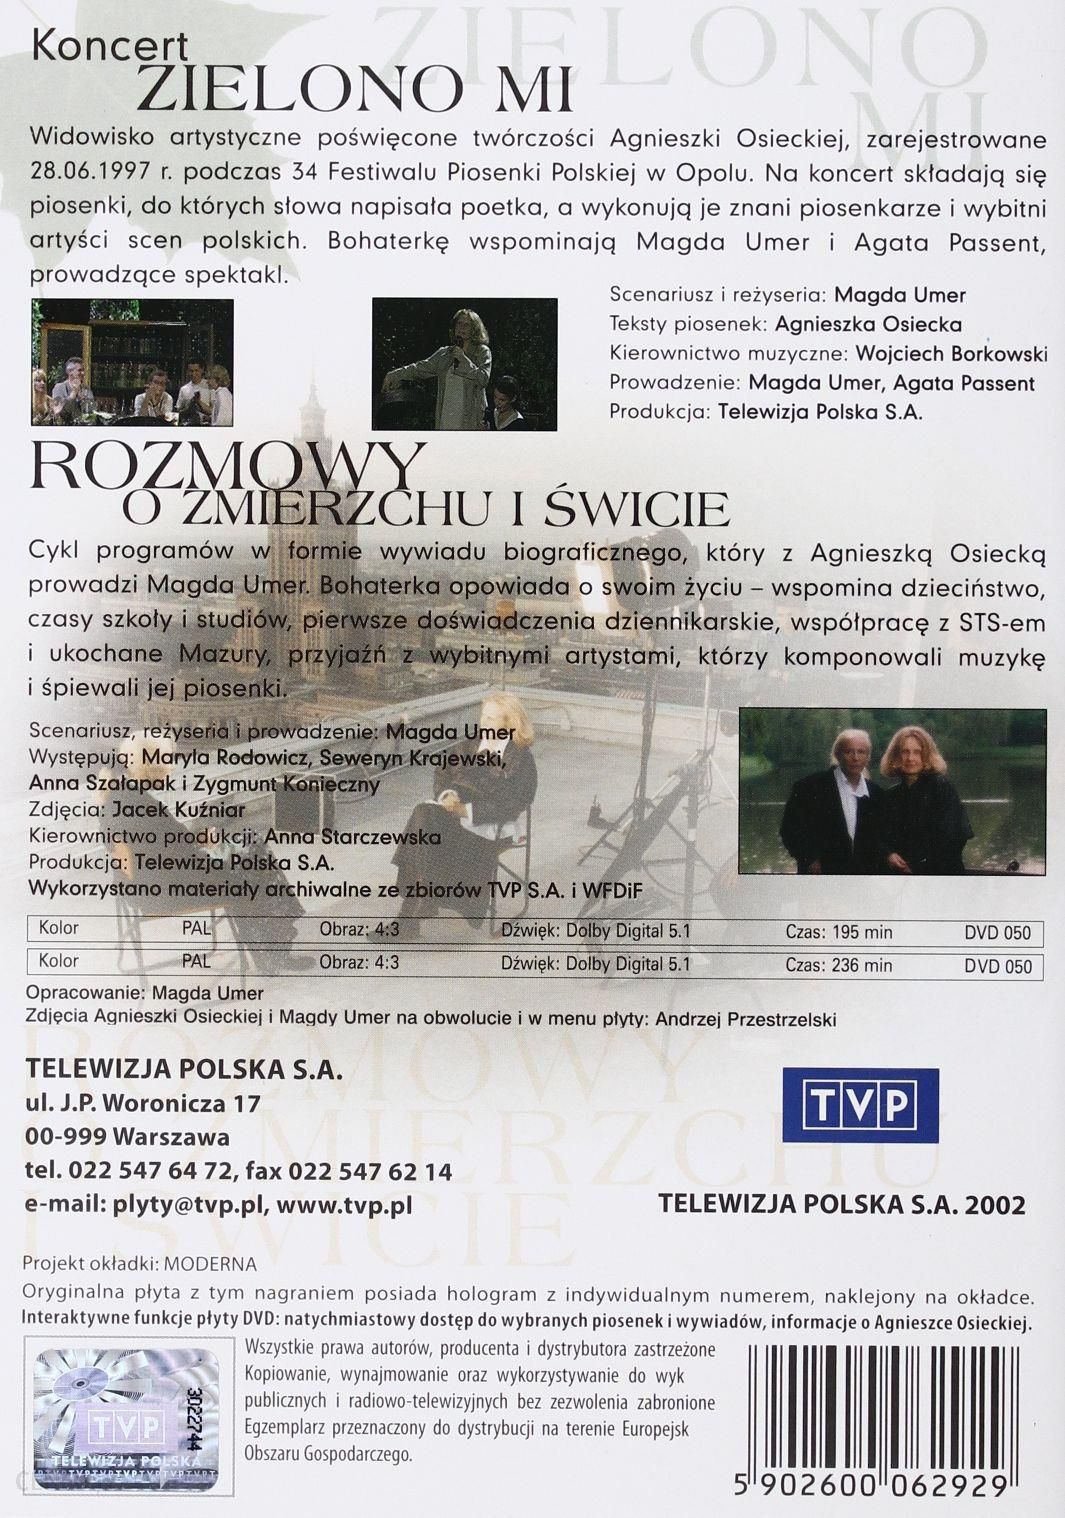 Agnieszka Osiecka - Zielono Mi + Rozmowy o zmierzchu i świcie (DVD)